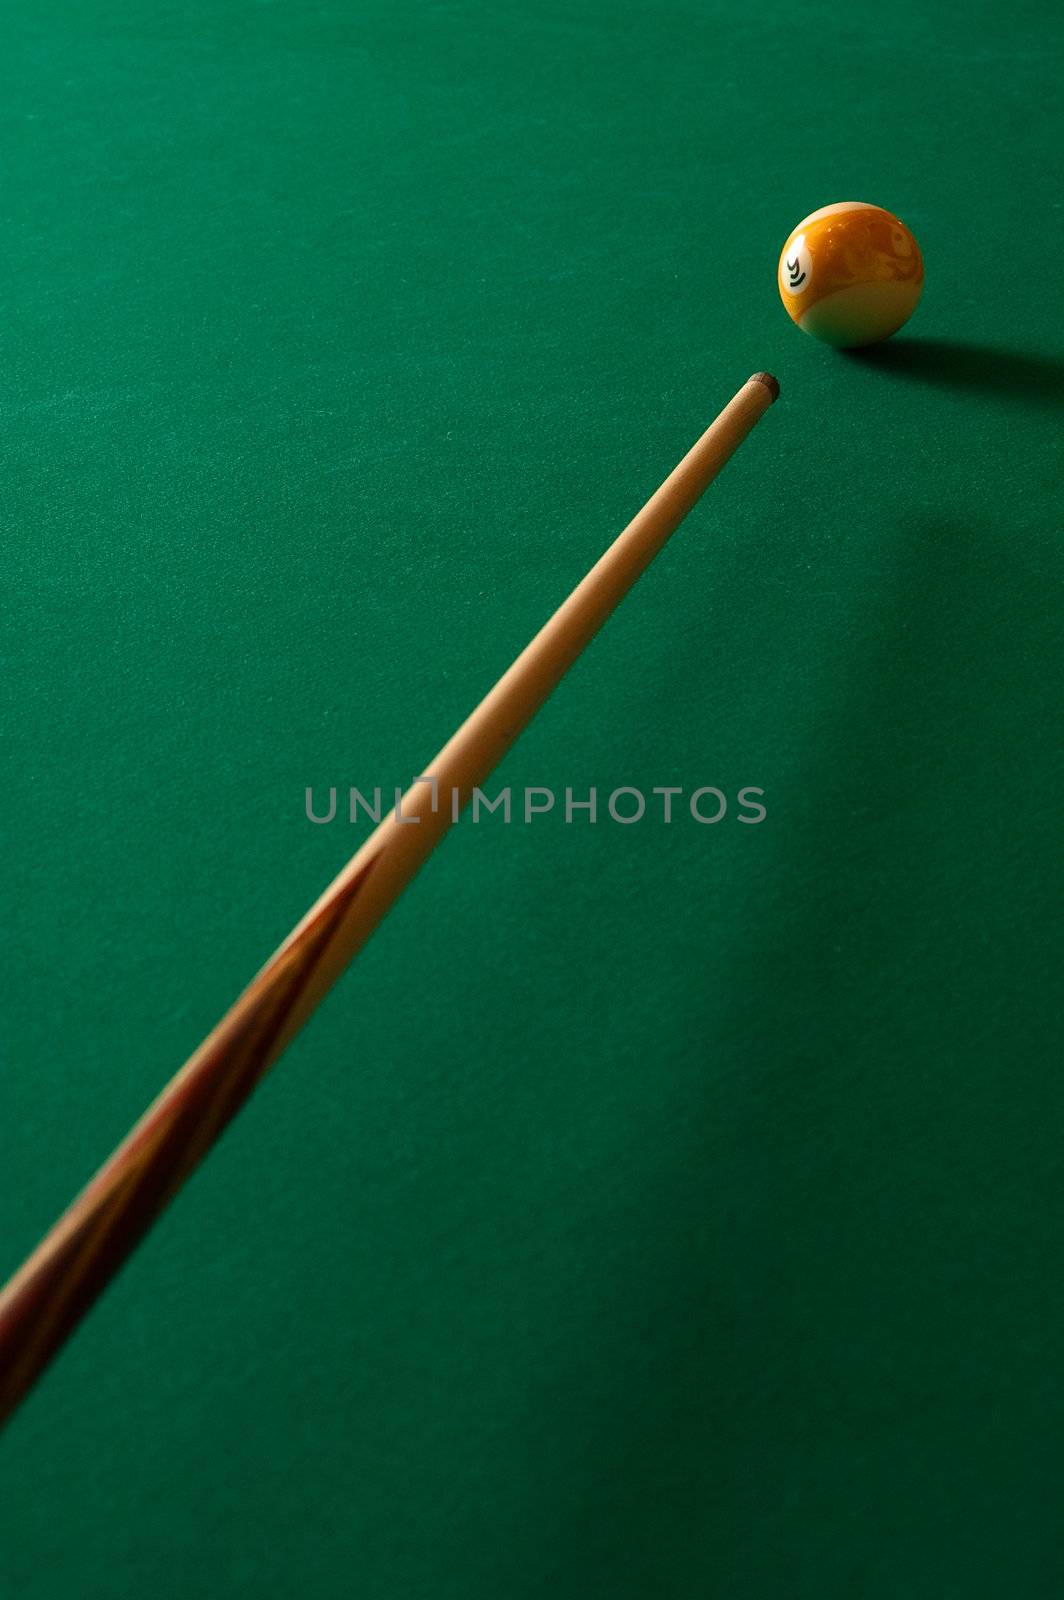 Billiards by oleg_zhukov